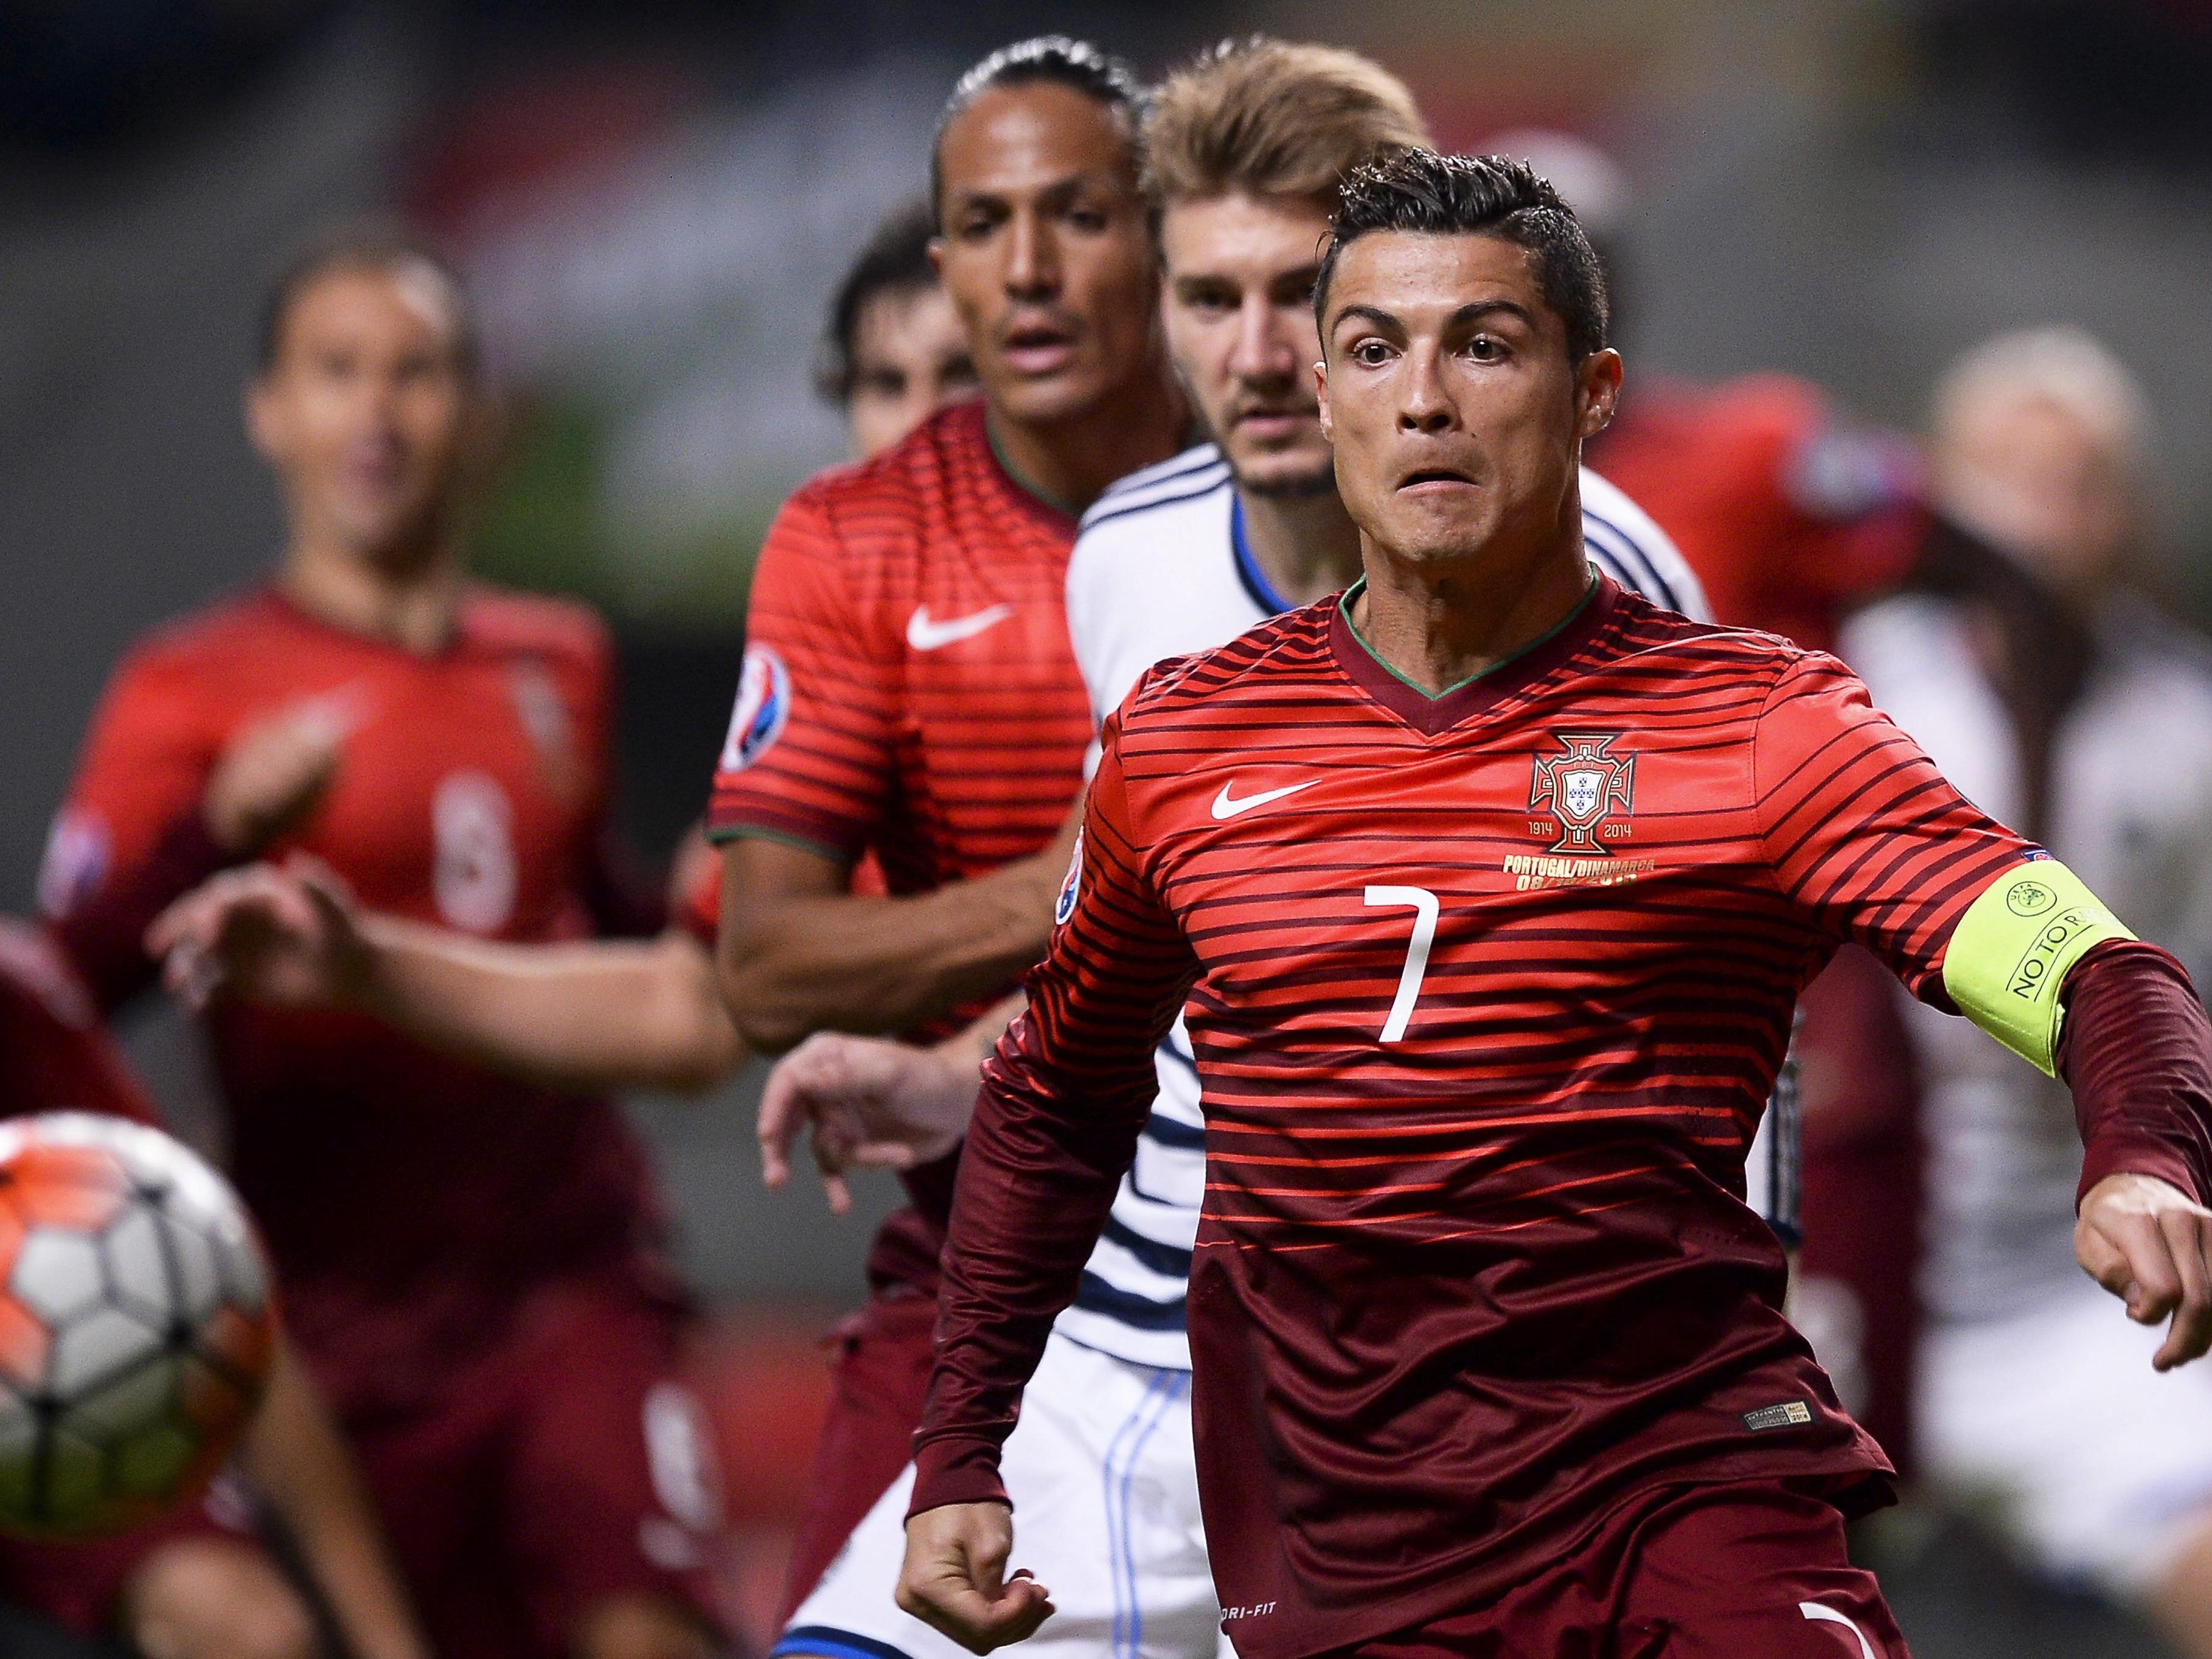 Kapitän, Topscorer, Superstar - Cristiano Ronaldo ist das Um und Auf im portugiesischen Team.